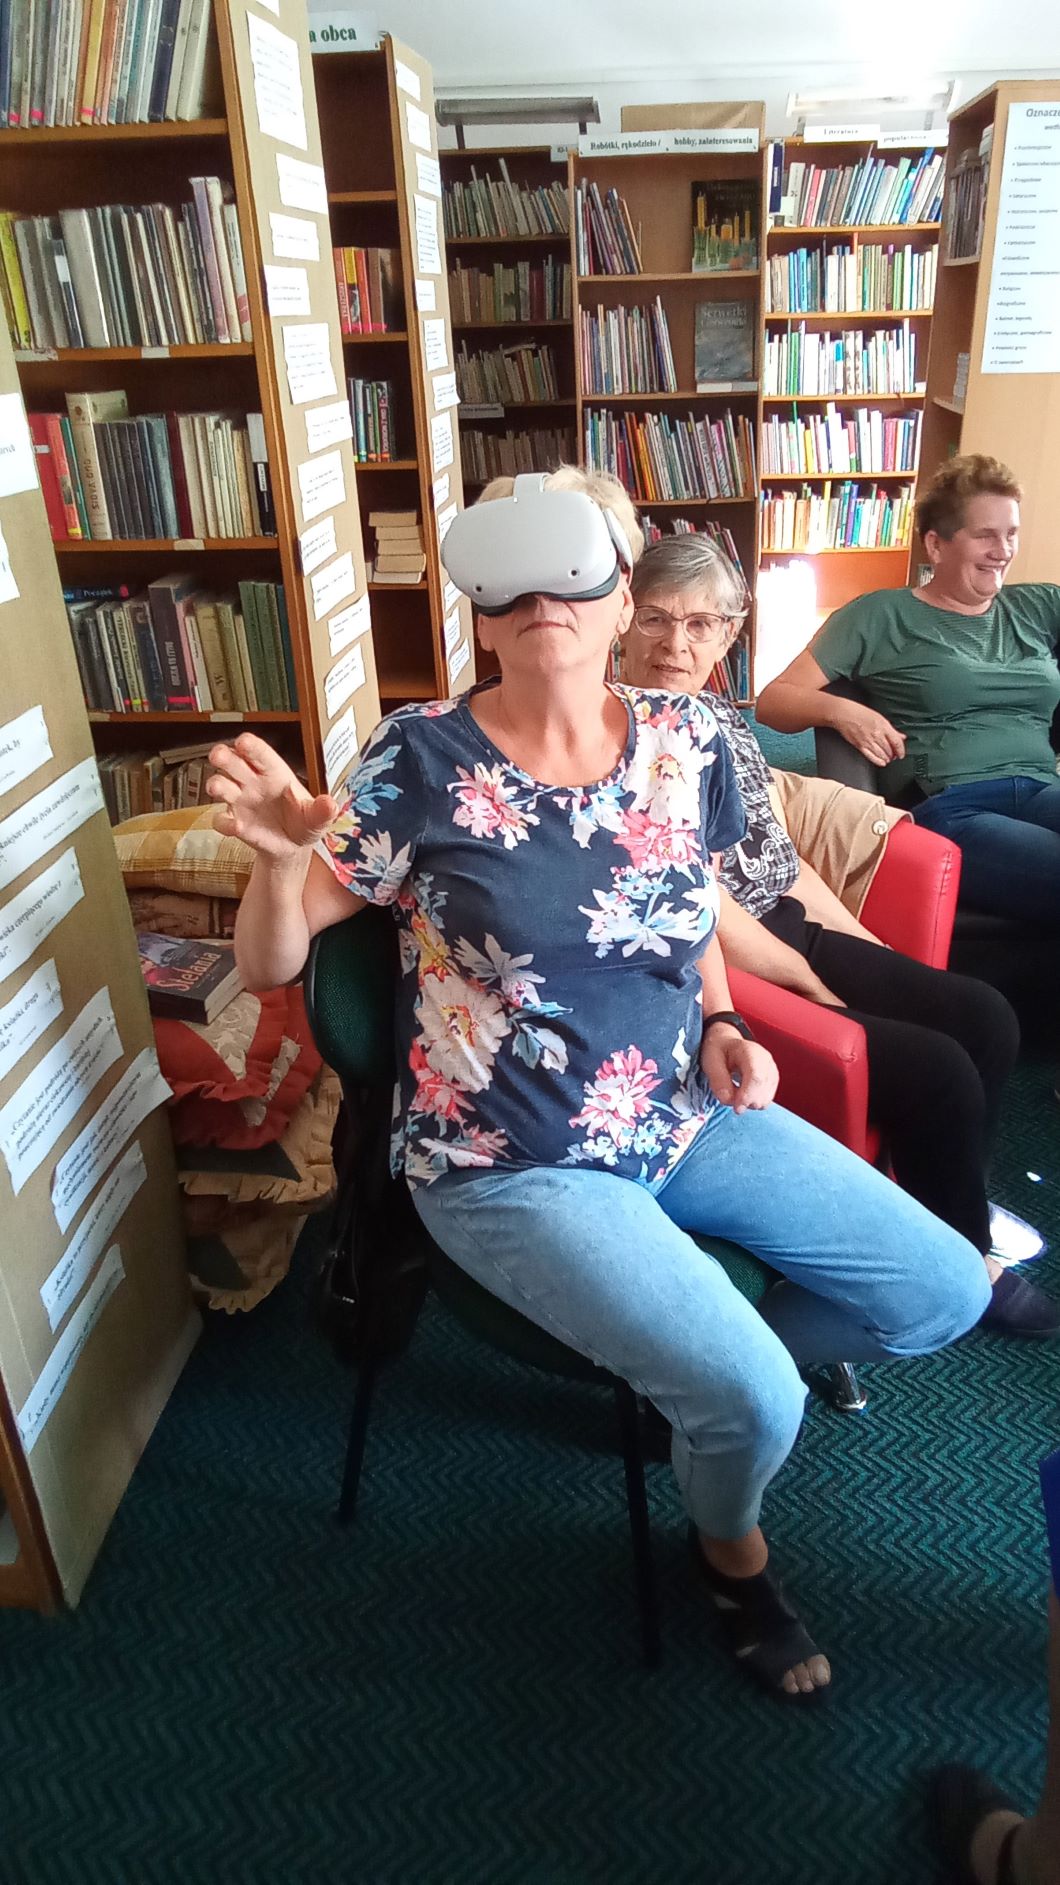 Pani L. żywo reaguje na oglądane obrazy wirtualnej rzeczywistości.